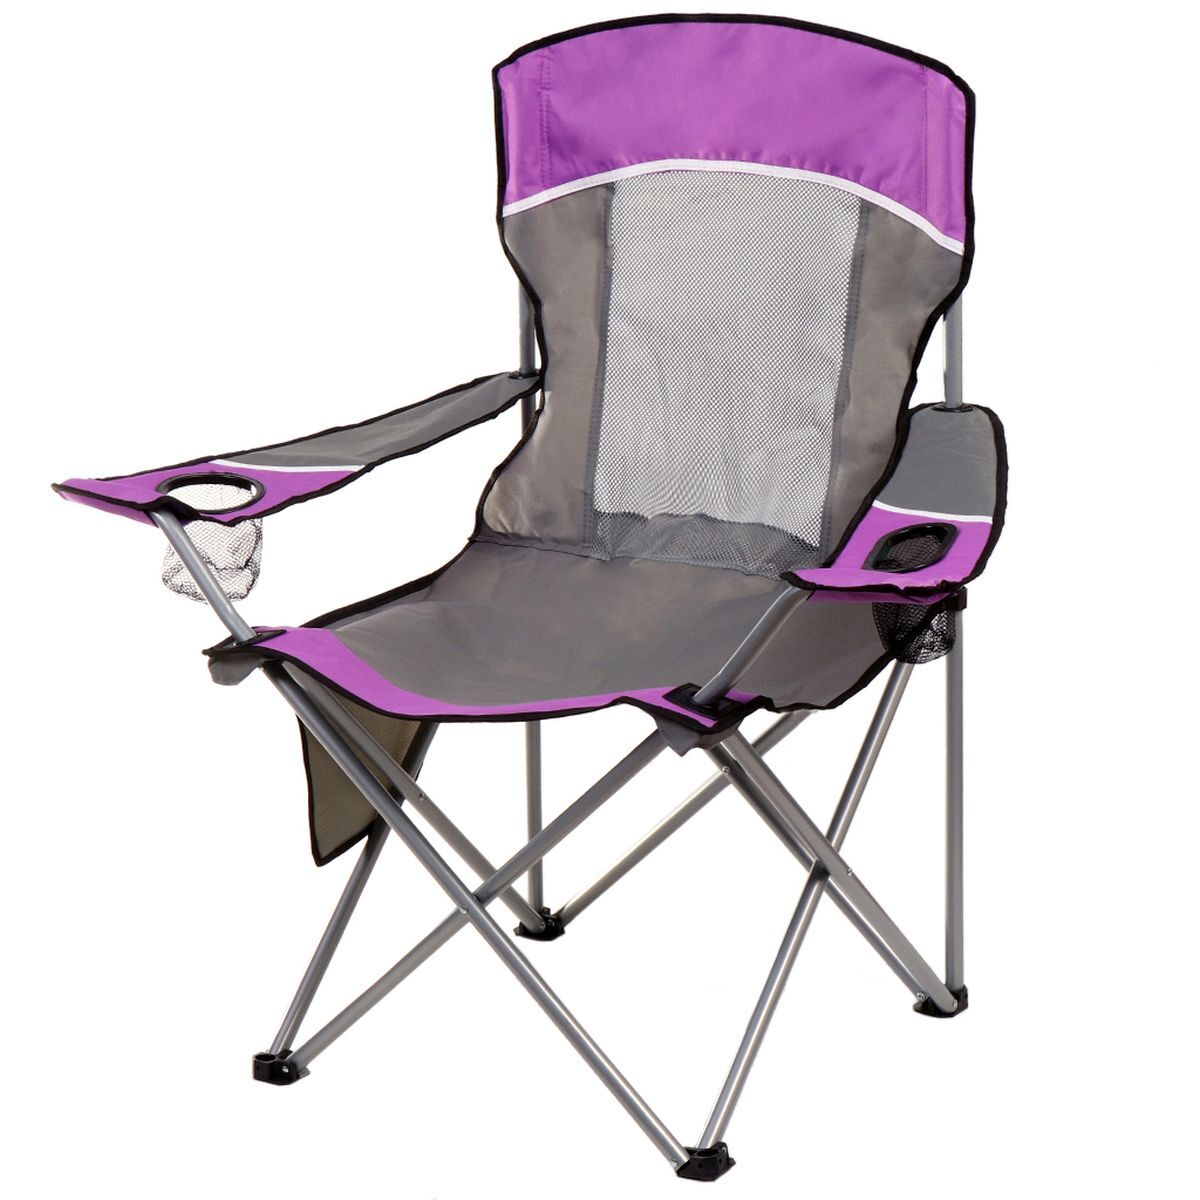 Стул-кресло 58х90х101 см, фуксия с серым, с подстаканником, 100 кг, Green Days, YTBC10101